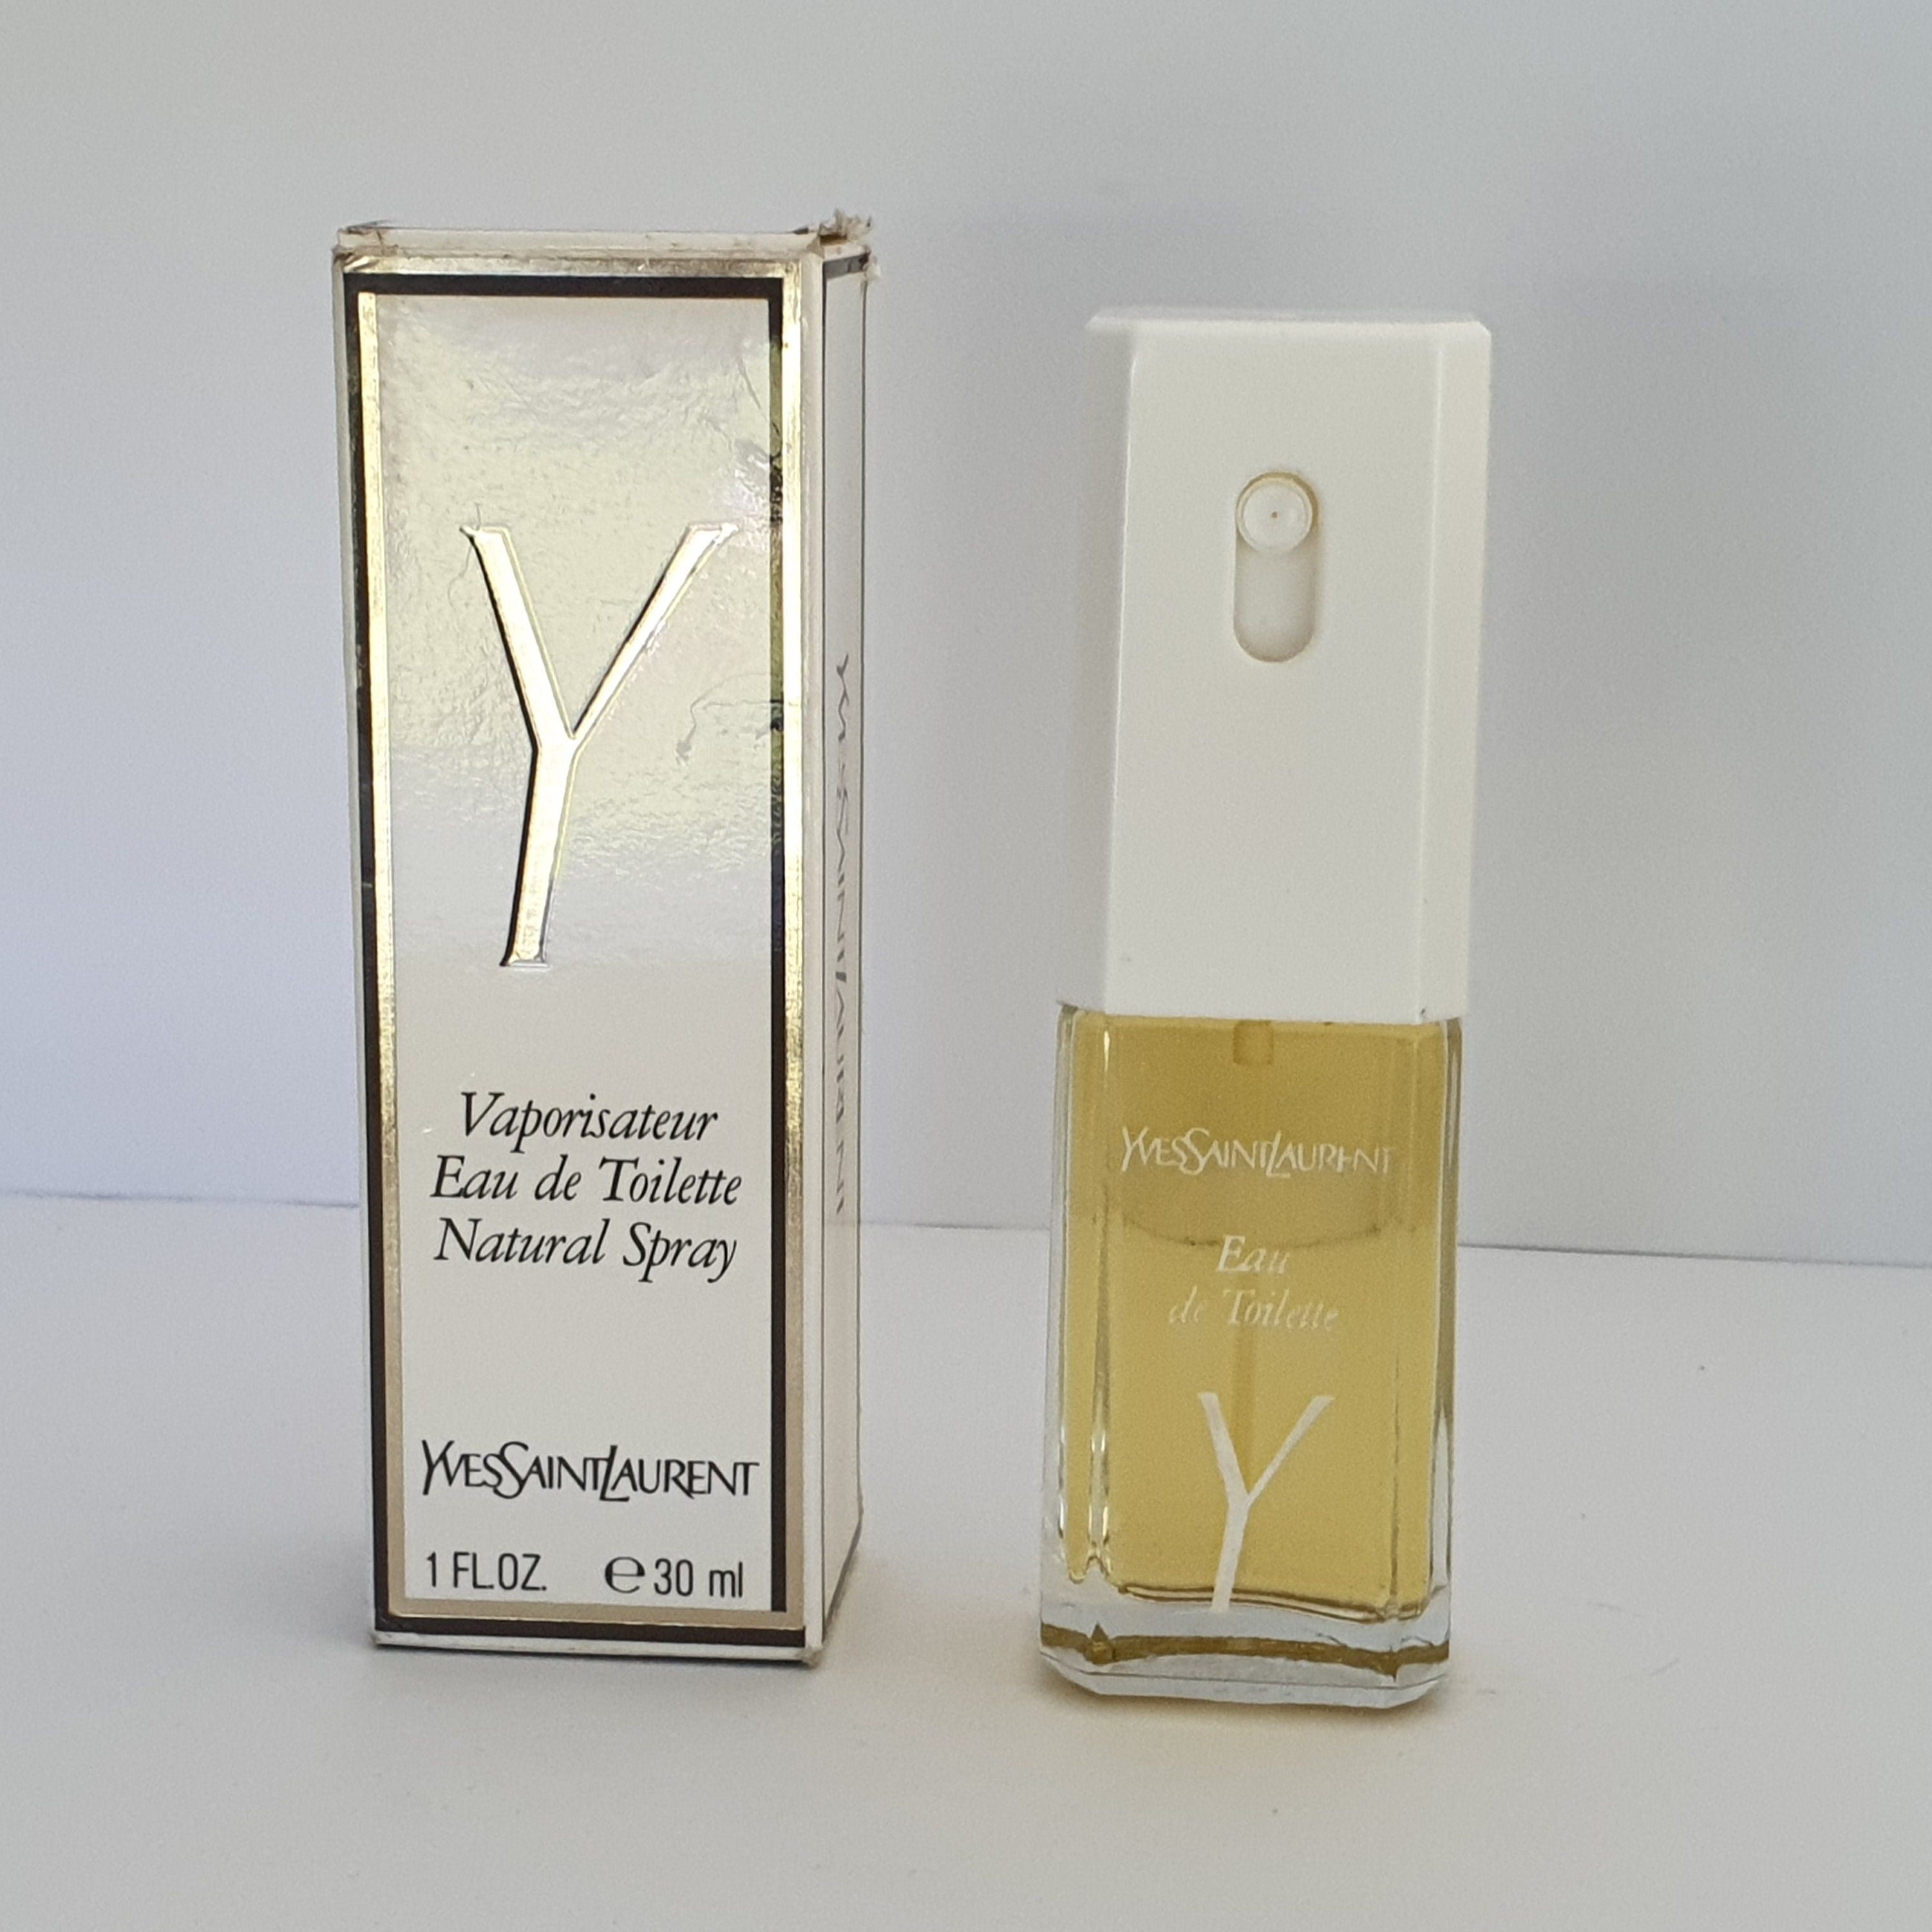 Vintage Rive Gauche Yves Saint Laurent 1.5 Oz. Cologne Spray 1/8